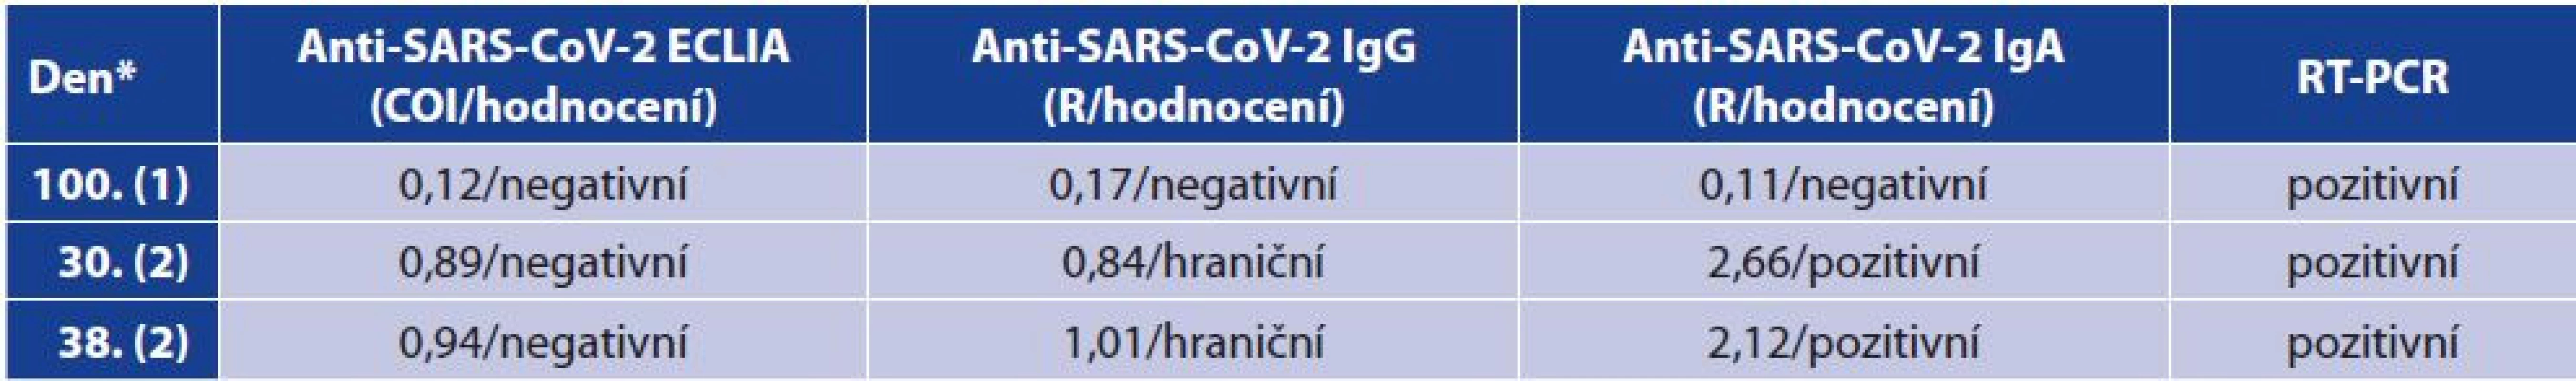 Sporné výsledky protilátek vzhledem k pozitivitě RT-PCR<br>
Table 7. Contradictory antibody results vs RT-PCR positivity
